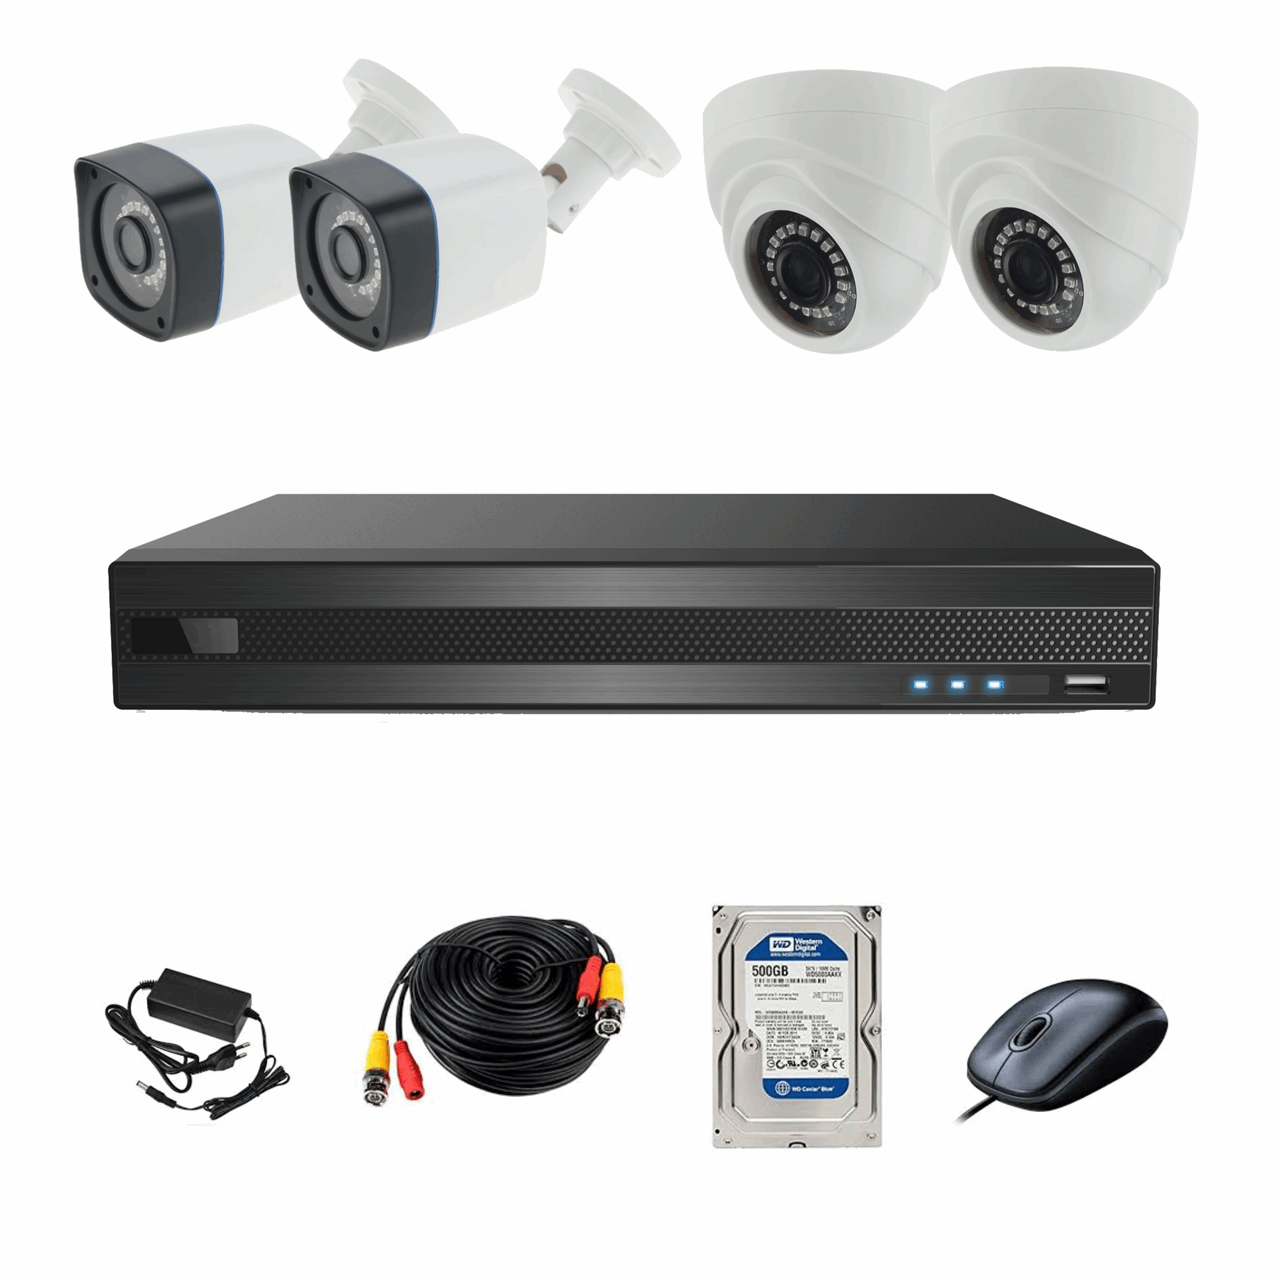 سیستم امنیتی ای اچ دی فوتون کاربری مسکونی و فروشگاهی 4 دوربین